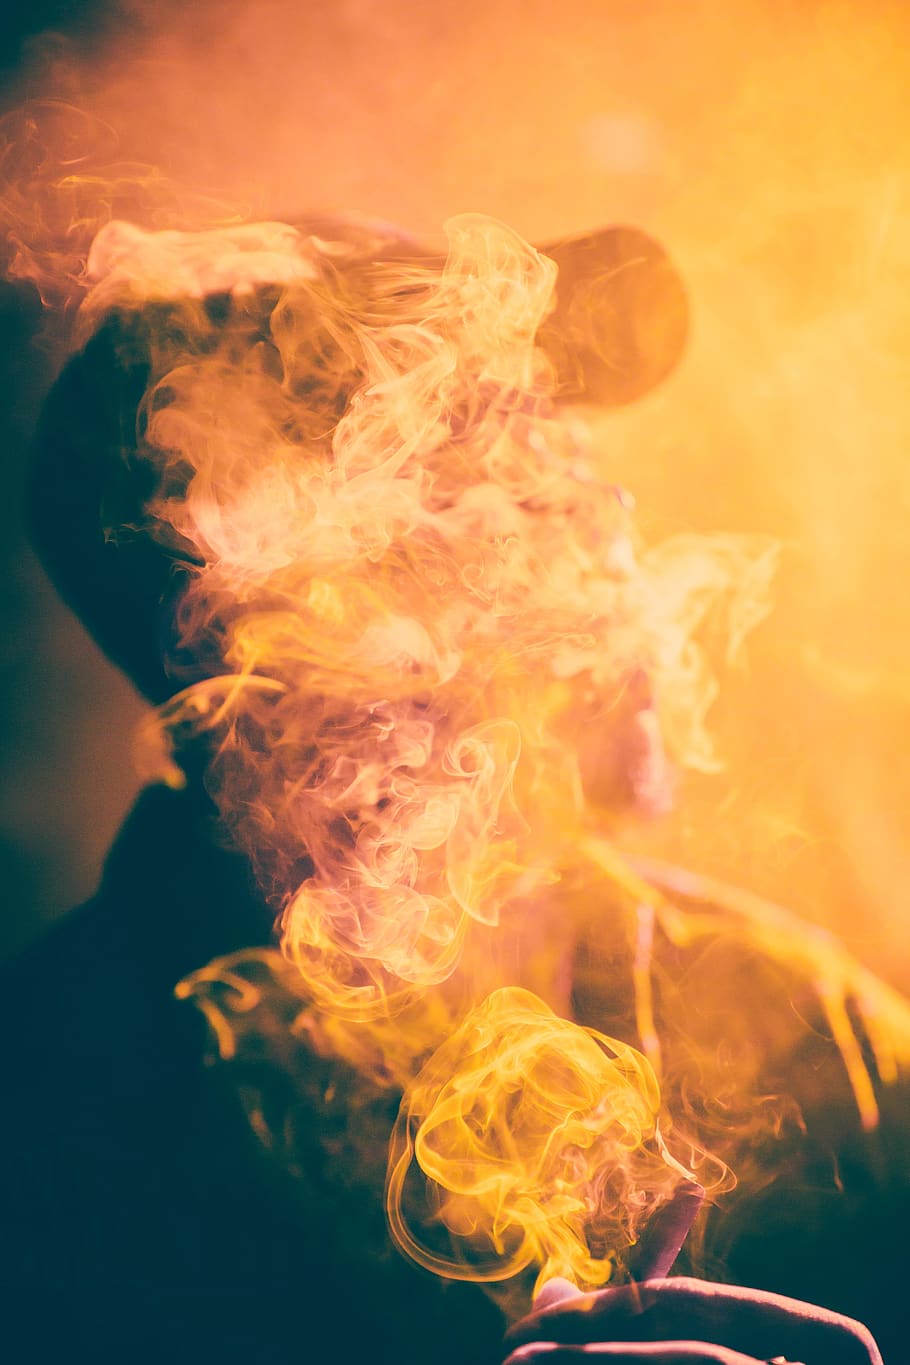 orang, pria, merokok, panas - suhu, pembakaran, warna oranye, merokok - struktur fisik, merapatkan, api, api - fenomena alam